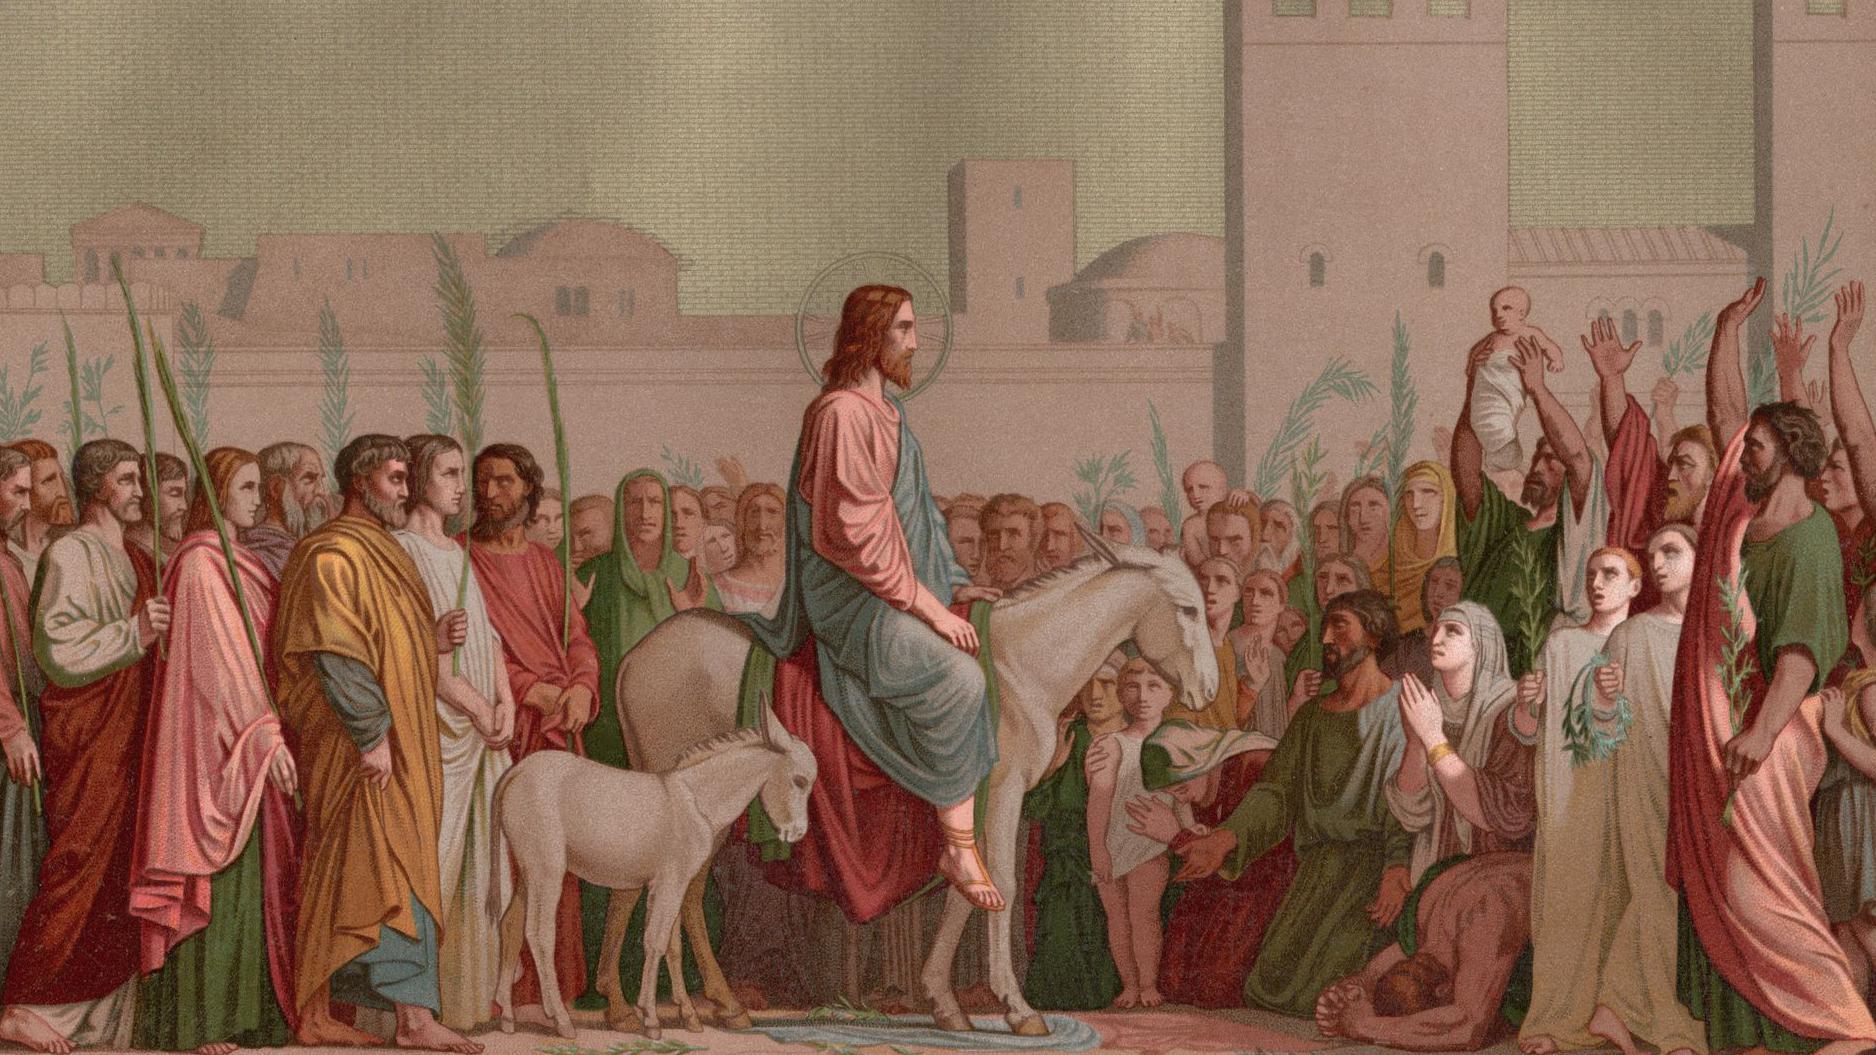 لوحة بعنوان "دخول يسوع أورشليم يوم أحد الشعانين"، مع أعمال هيبوليت فلاندرين عام 1844.